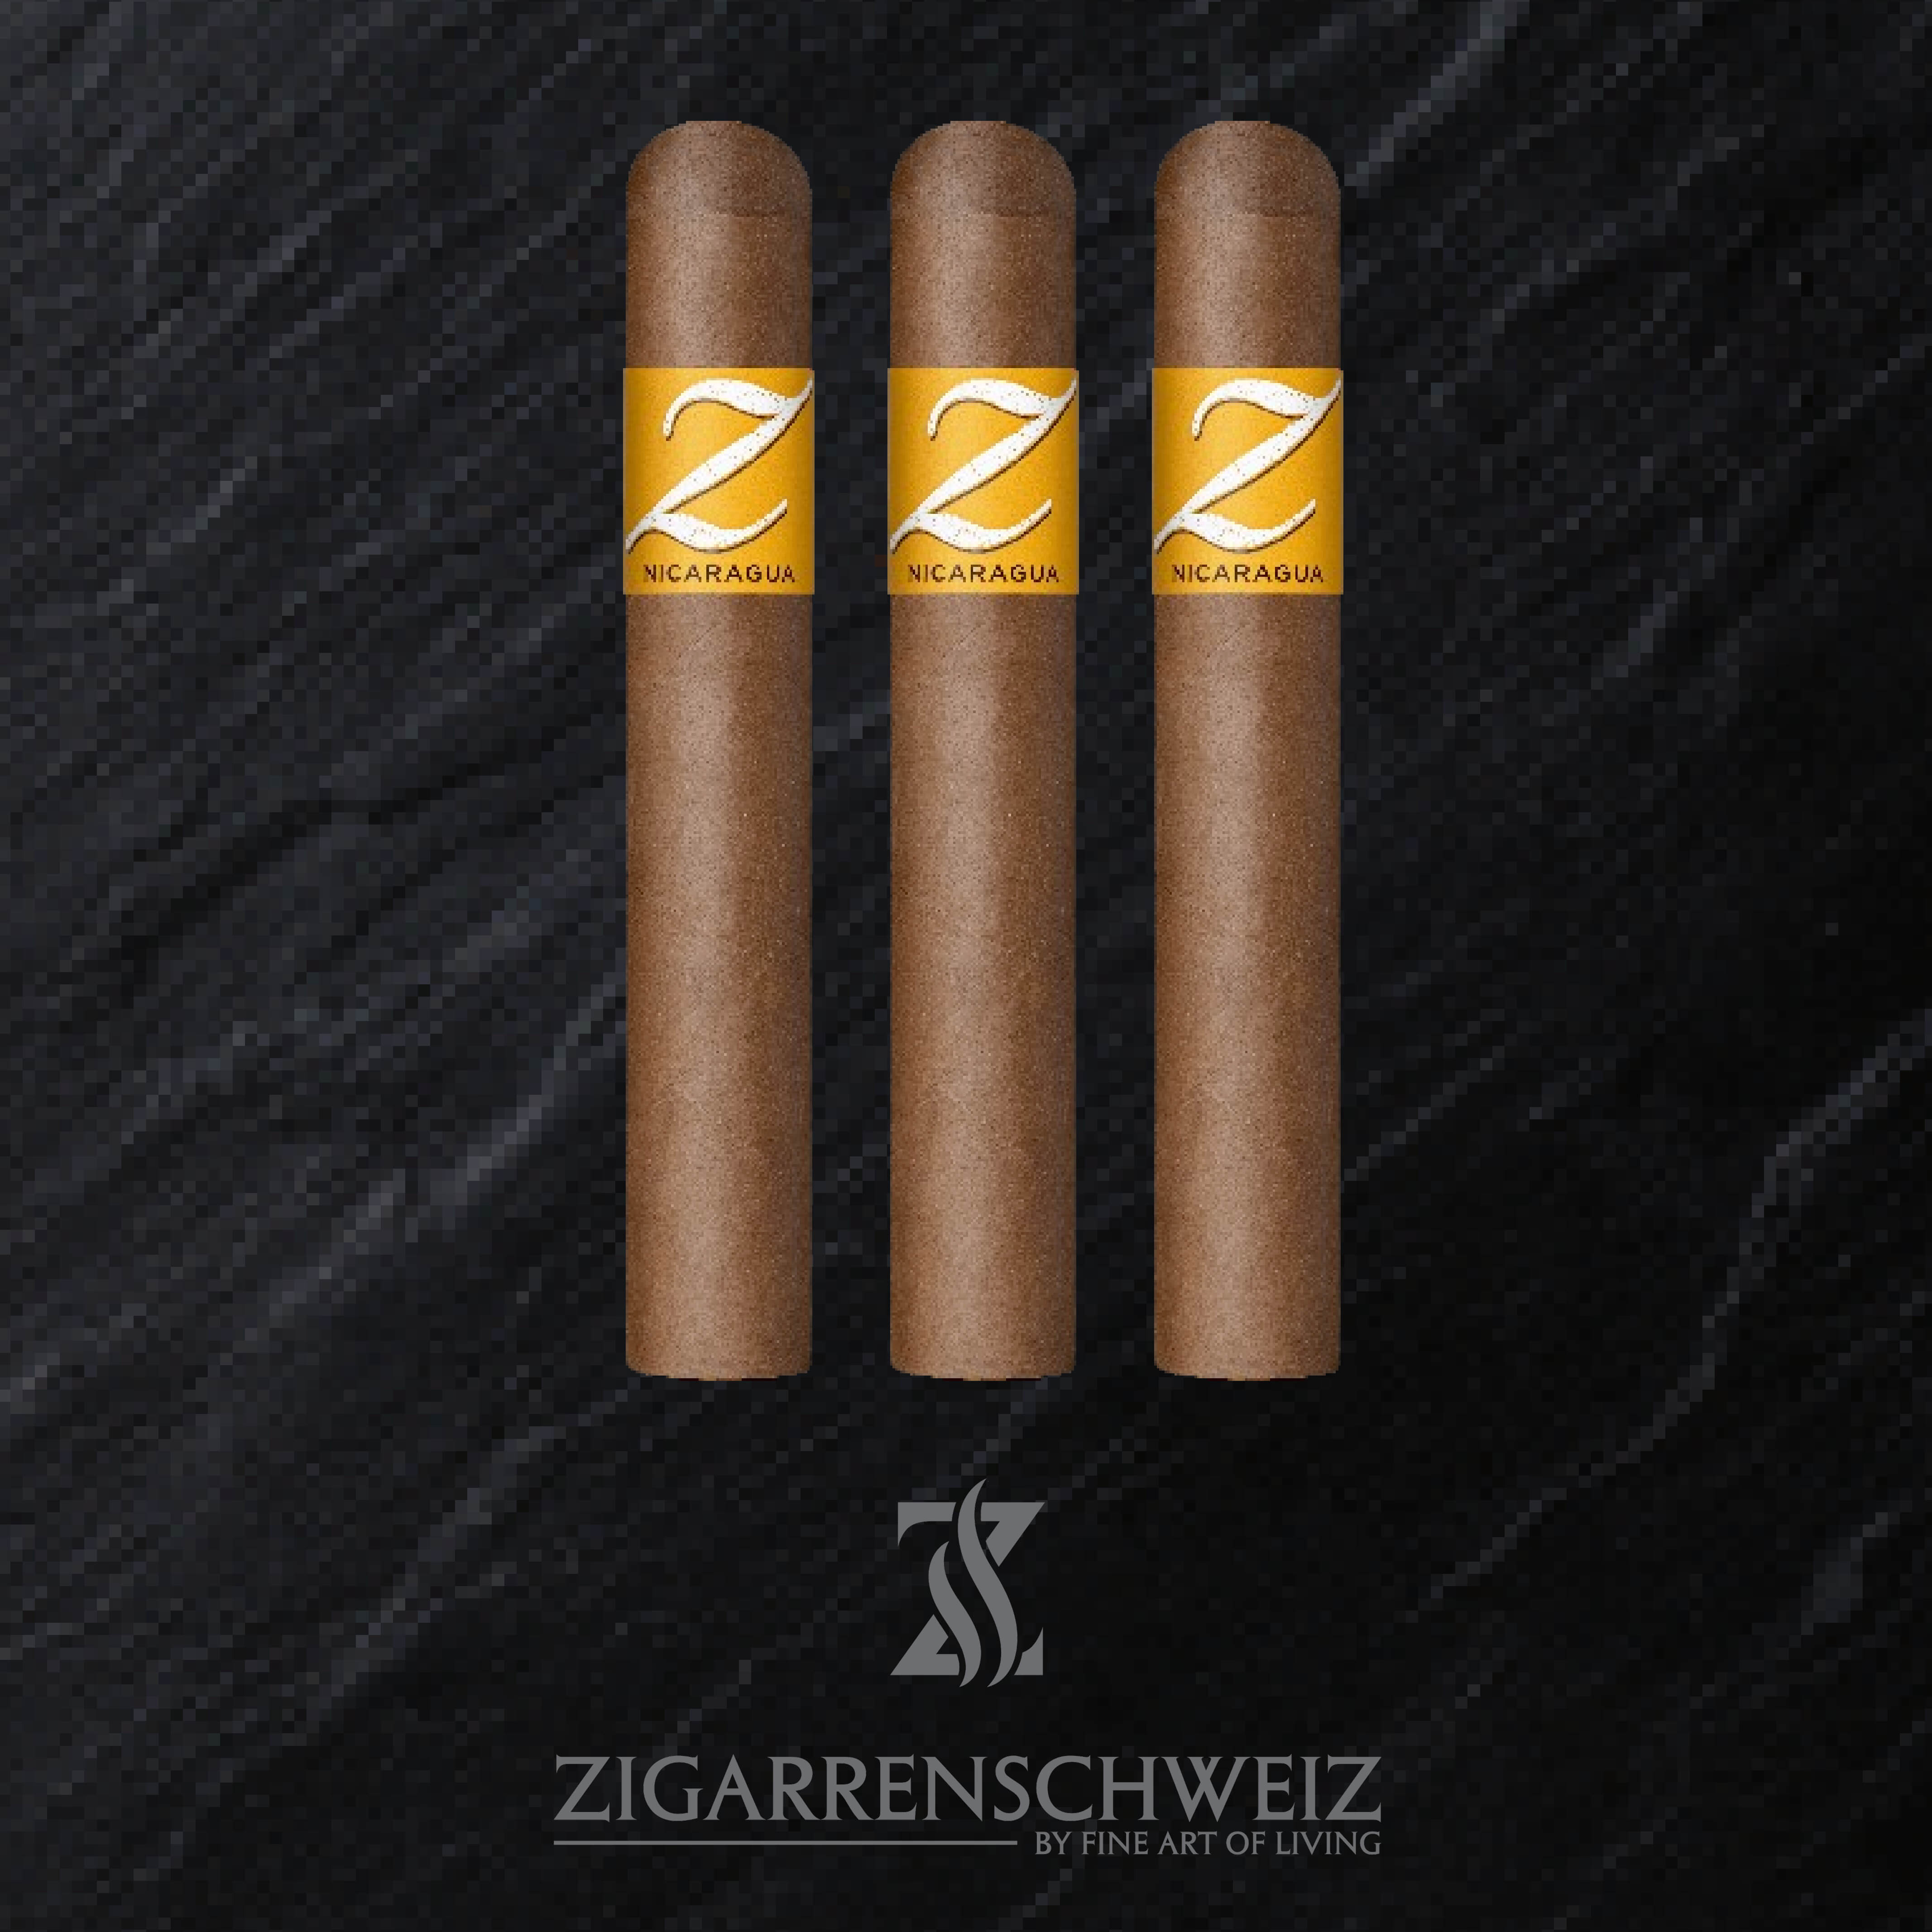 Zino Nicaragua Gordo Zigarren 3er Etui von Zigarren Schweiz